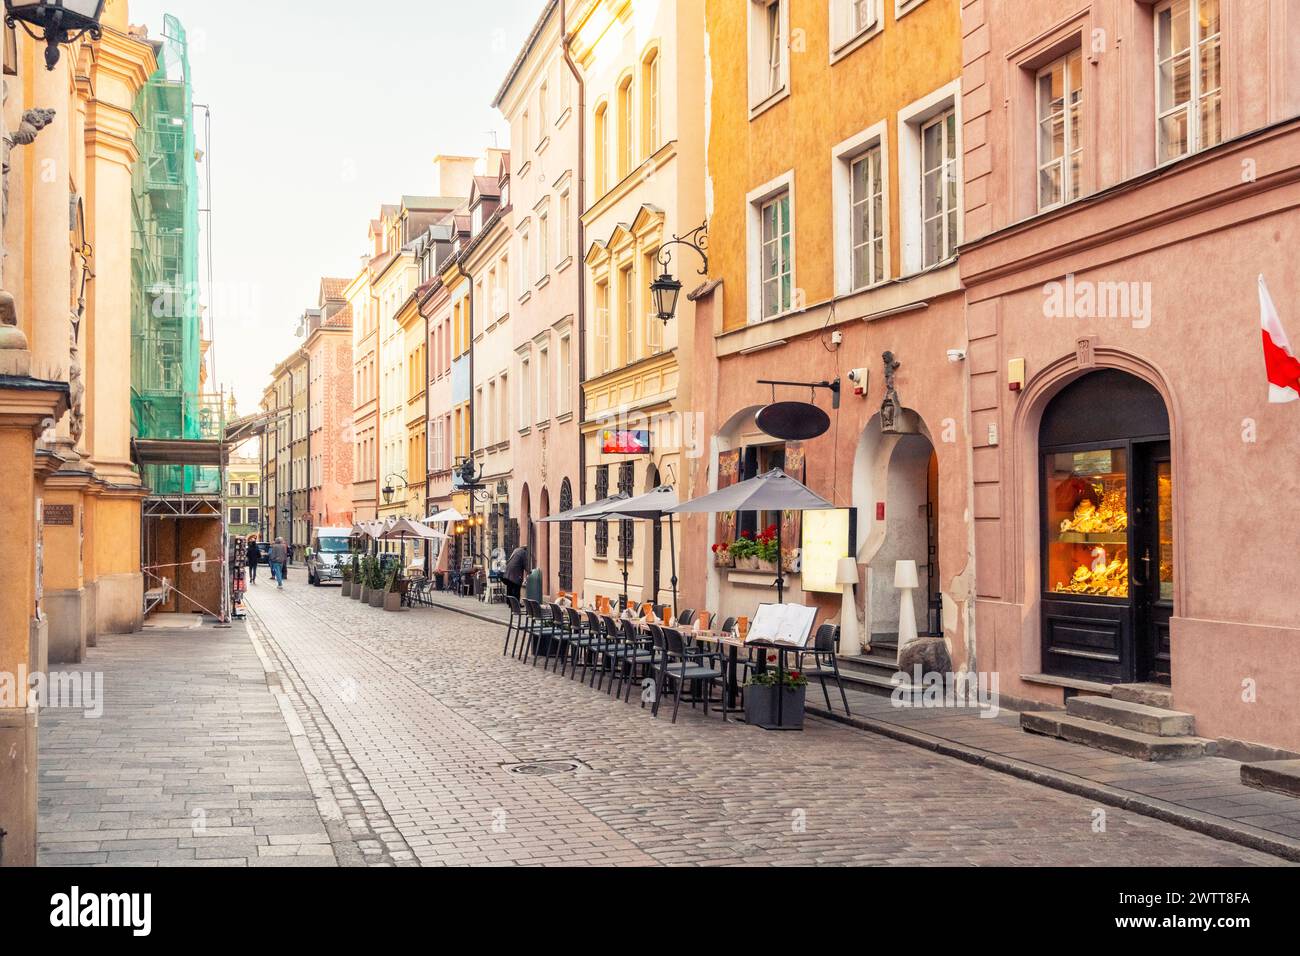 Eine ruhige europäische Straße in der goldenen Stunde, einladend mit warmen Tönen und historischem Charme. Stockfoto